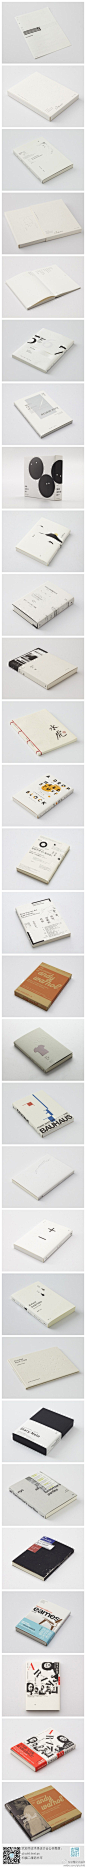 #求是爱设计#台湾平面设计师王志弘书籍封面设计欣赏